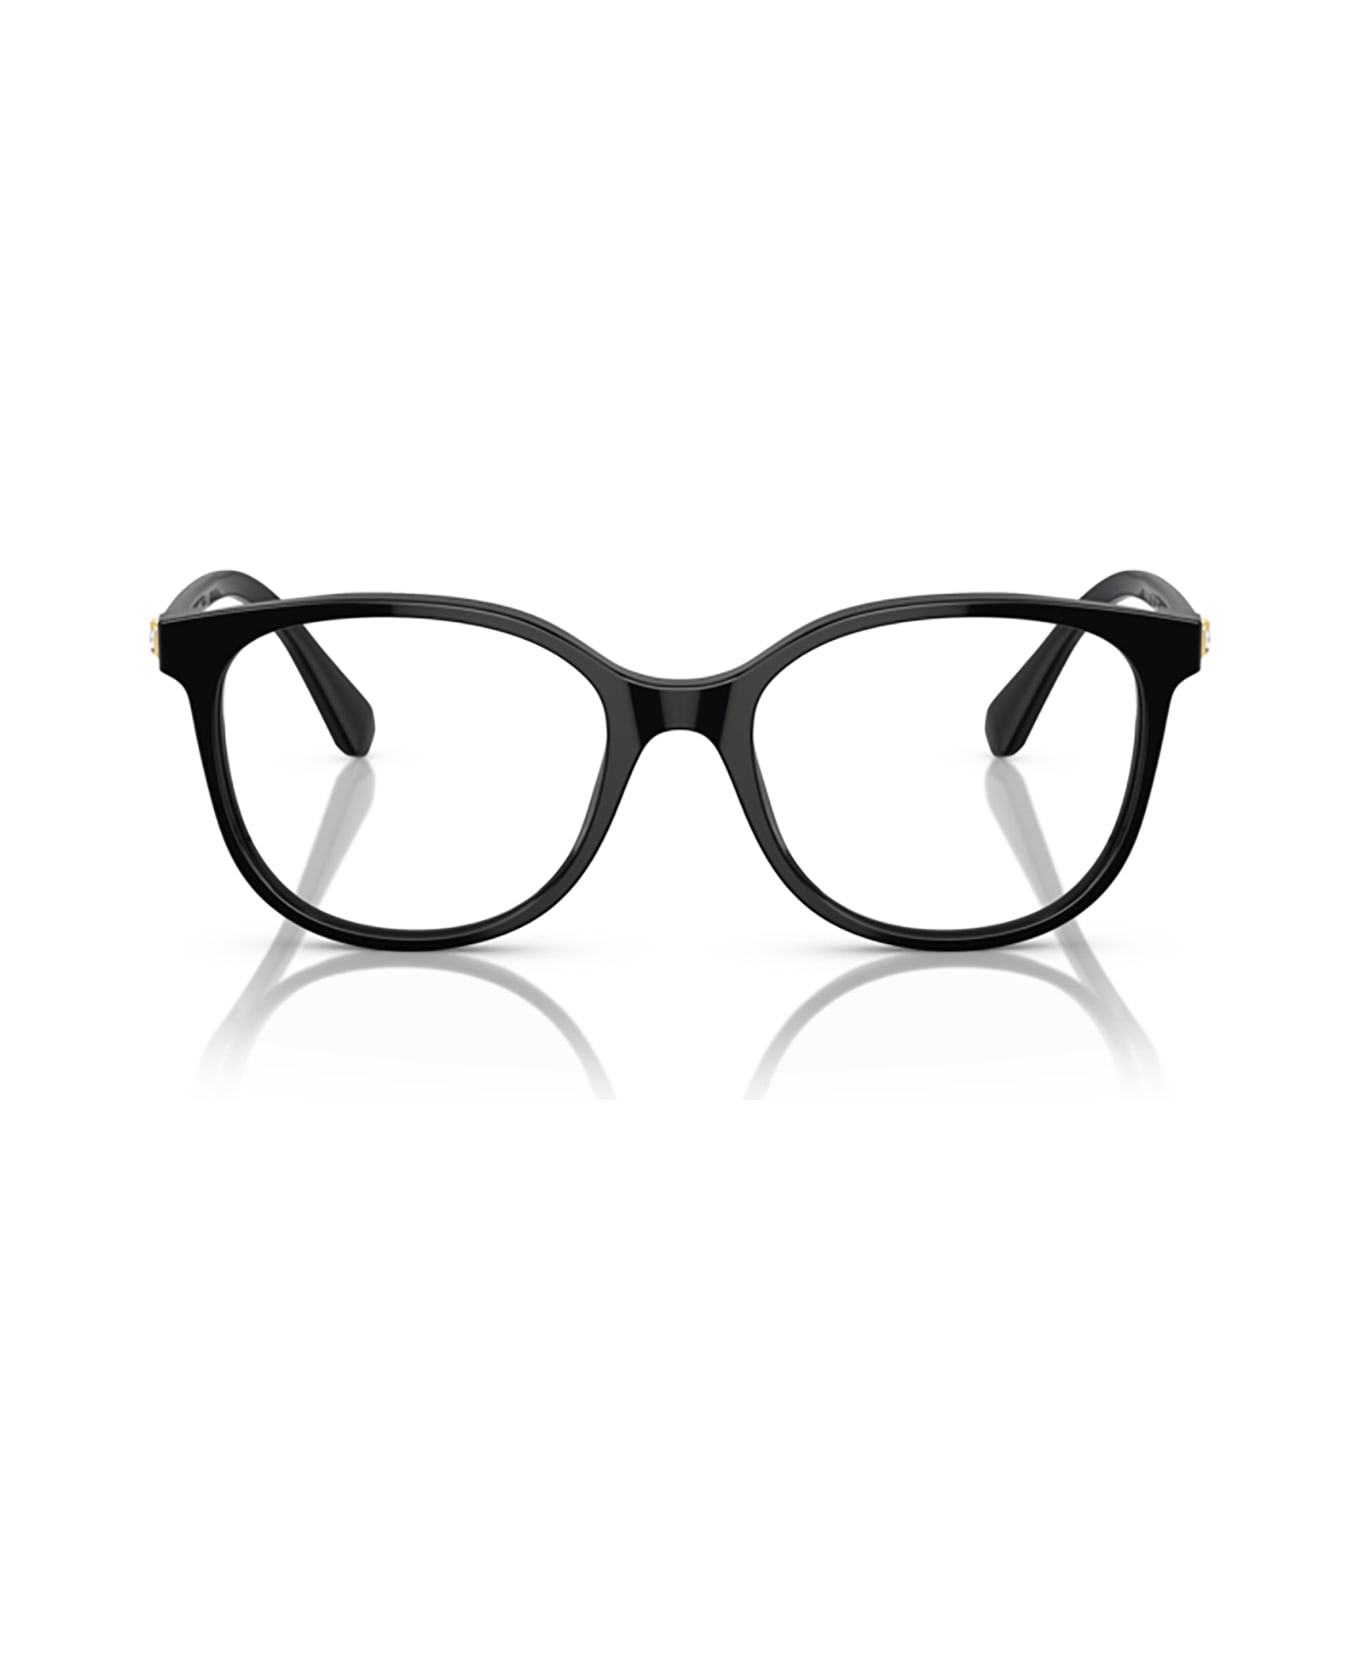 Swarovski Sk2002 Solid Black Glasses - Solid Black